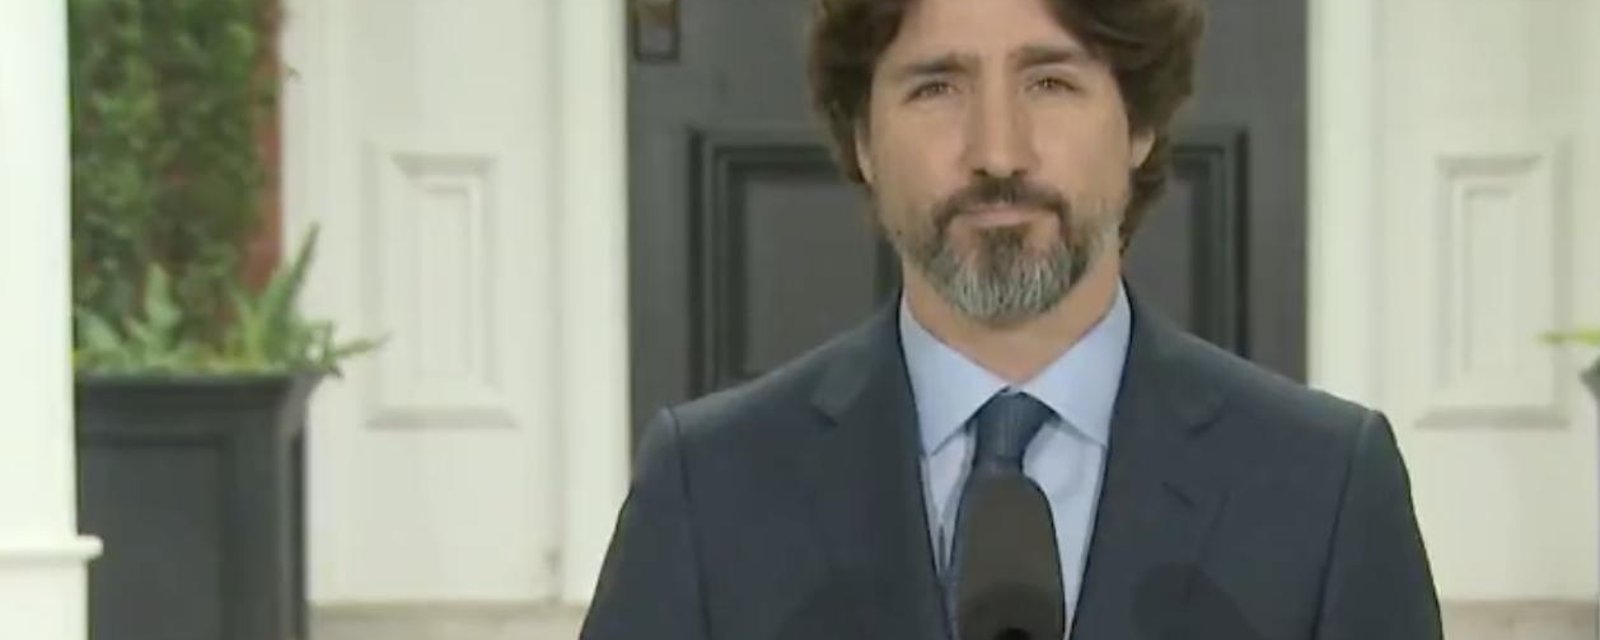 À VOIR: Justin Trudeau garde le silence pendant 21 secondes suite à une question sur Donald Trump